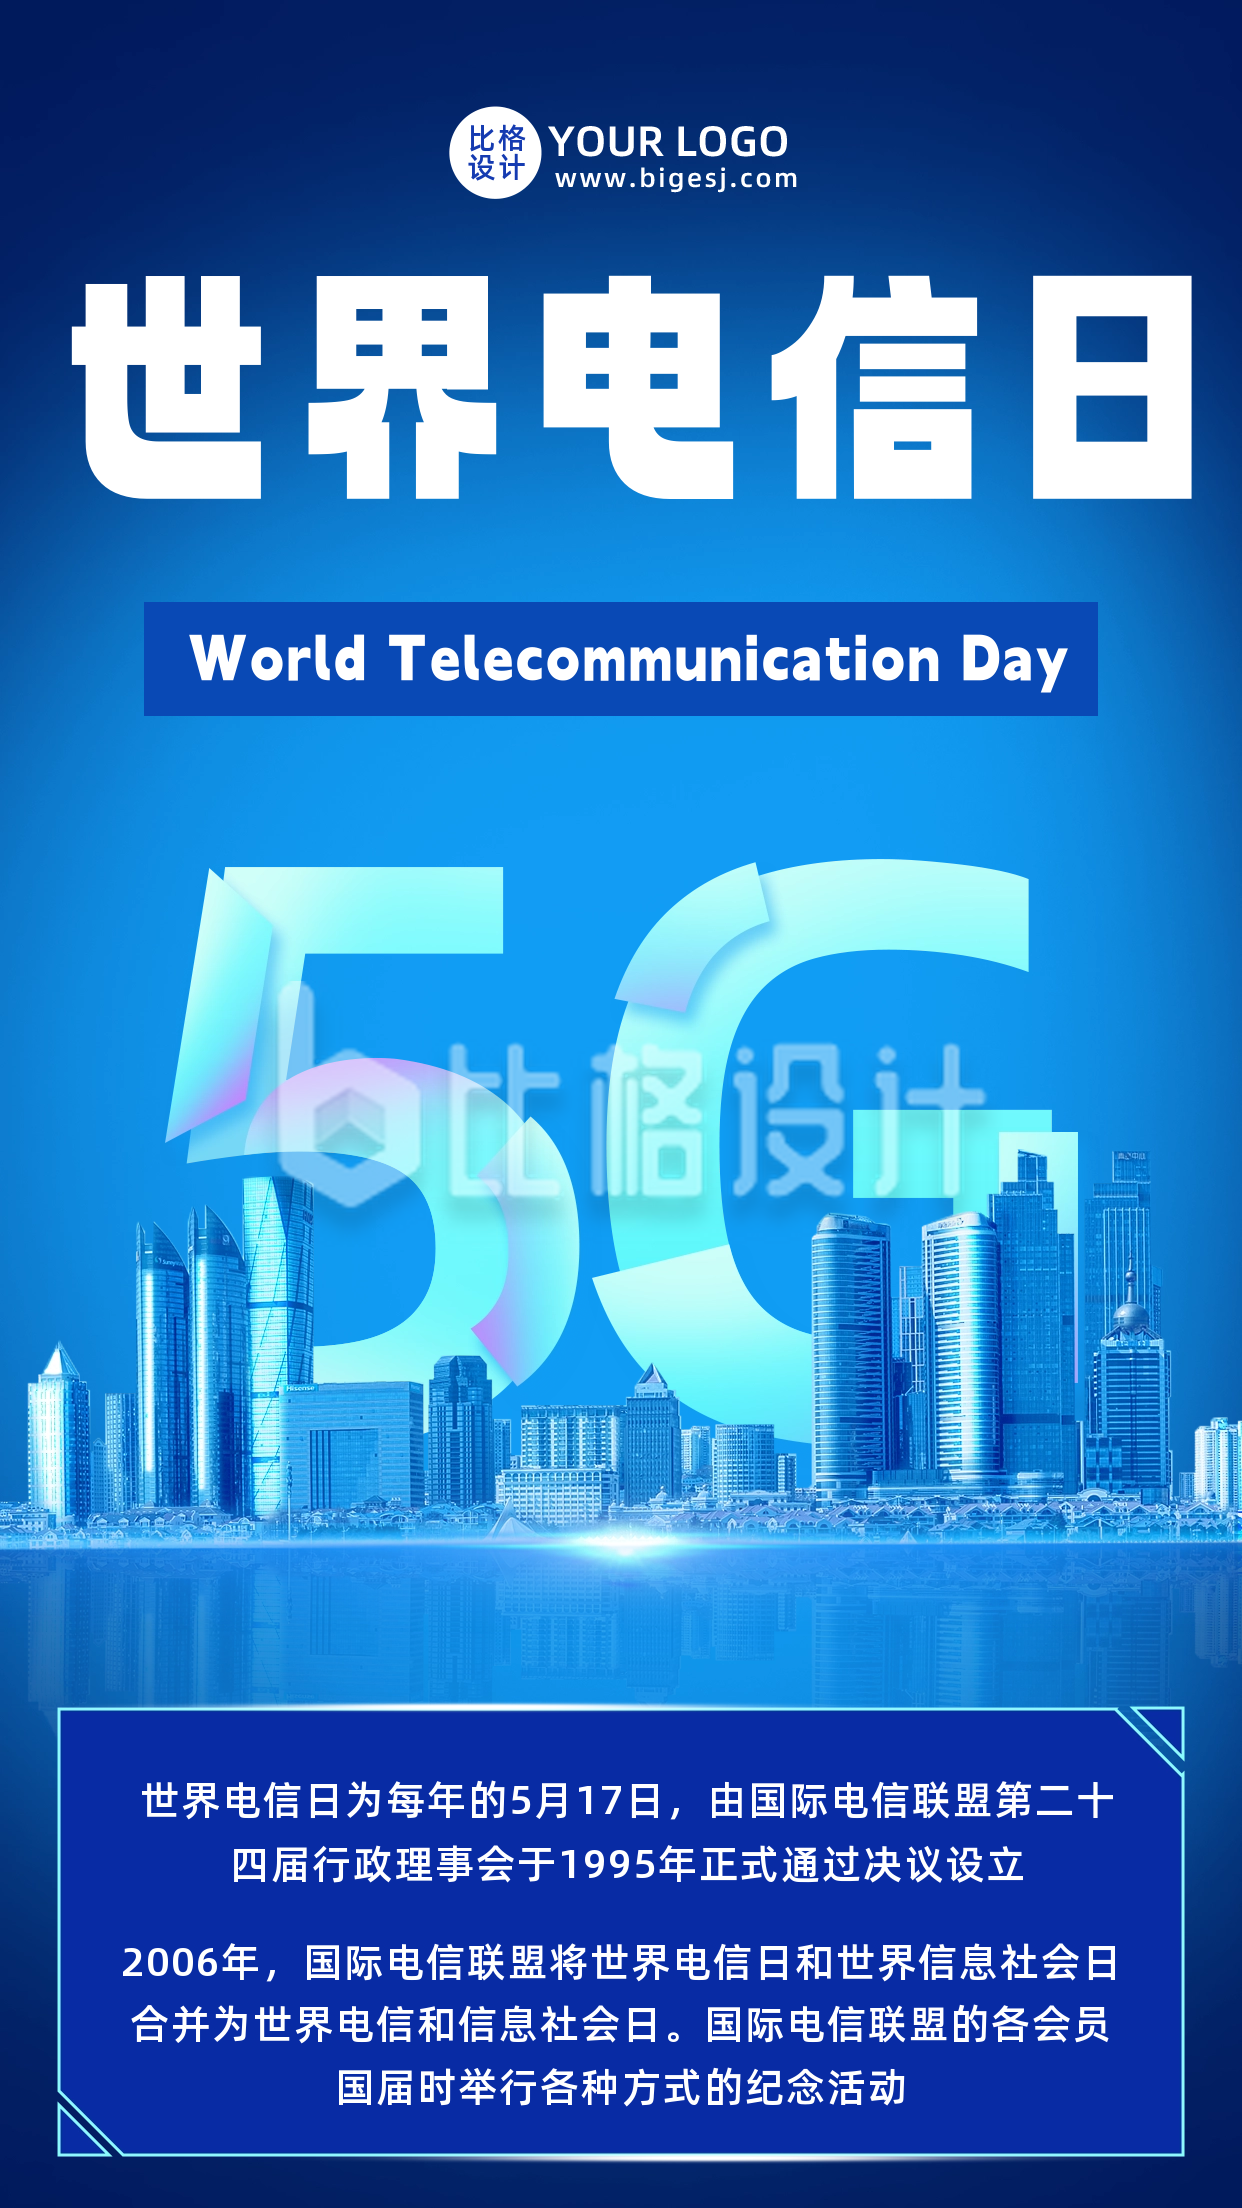 蓝色世界电信日节日宣传手机海报